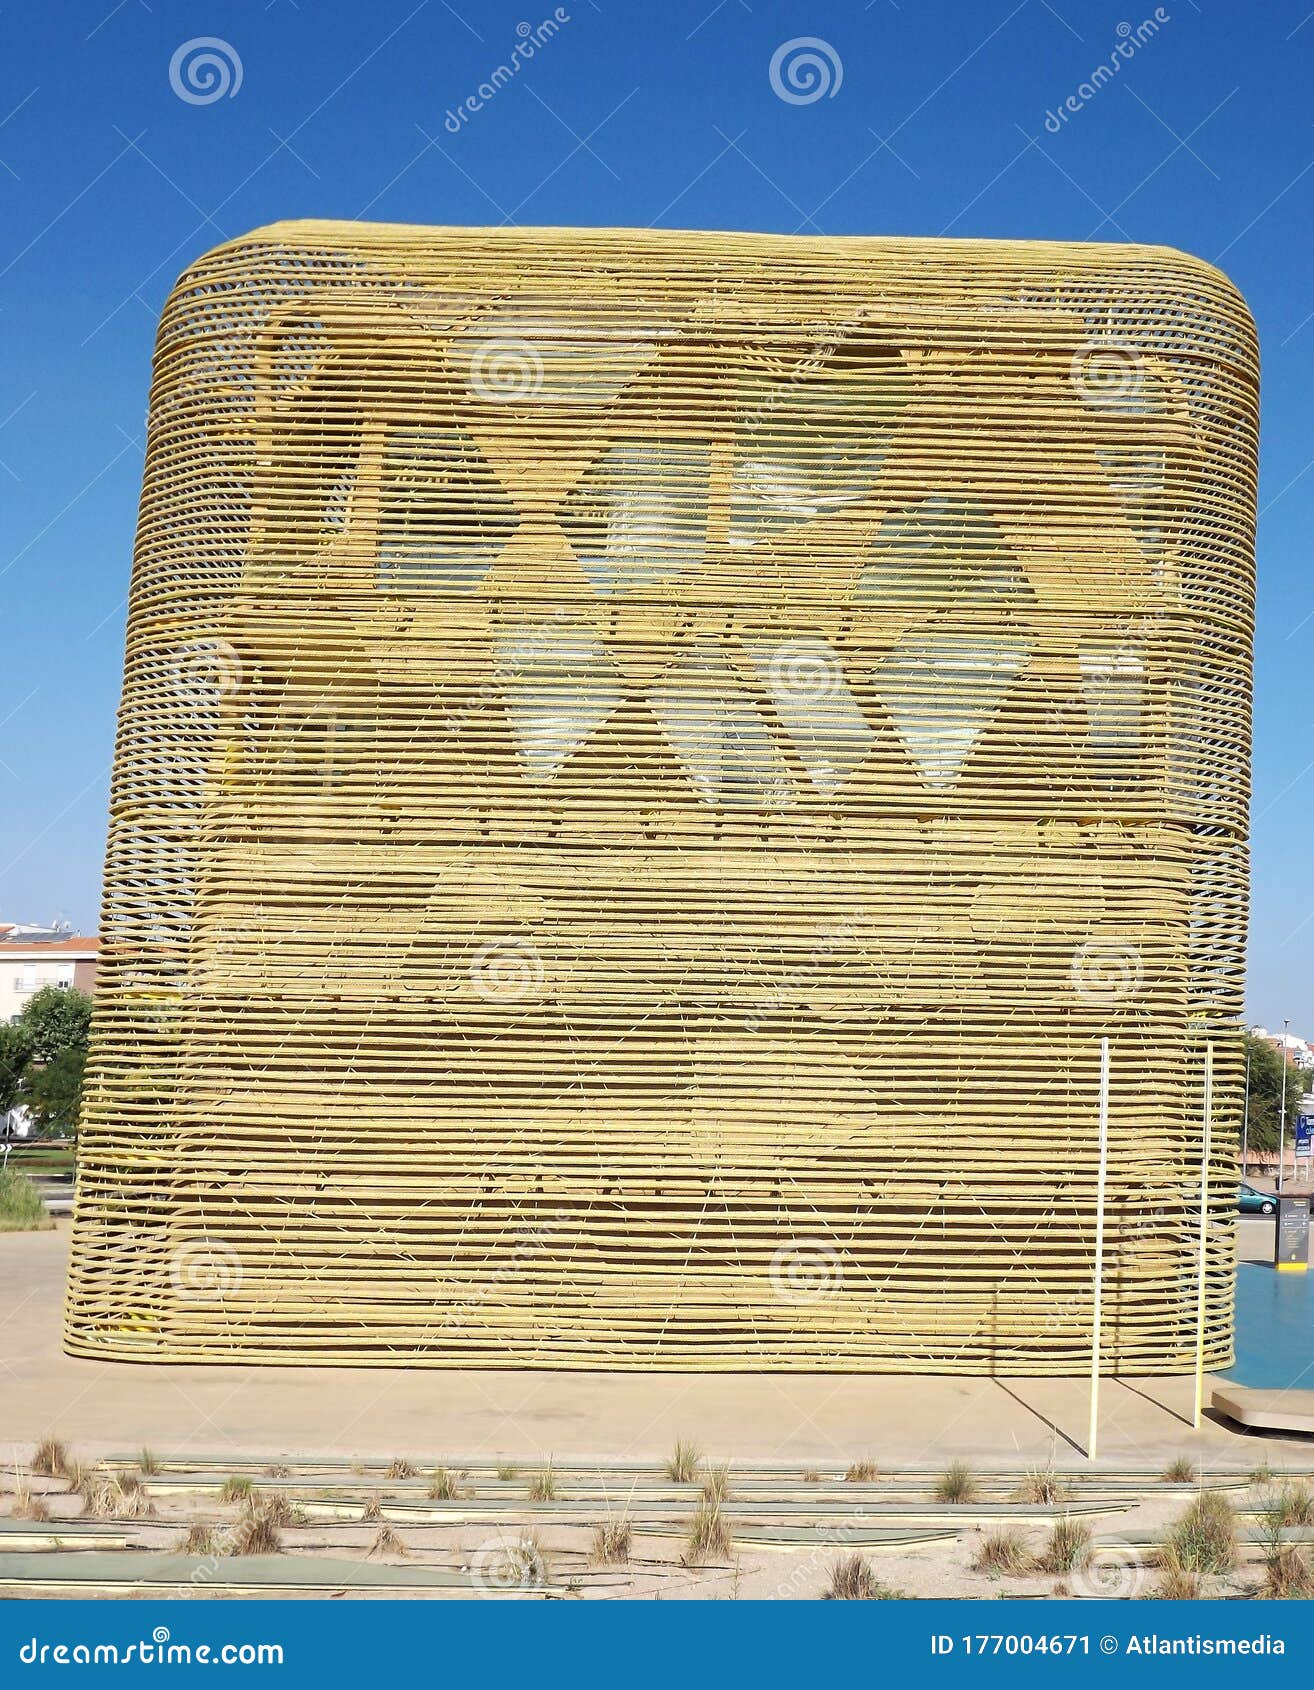 el cubo - modern event hall in villanueva de la serena, badajoz - spain